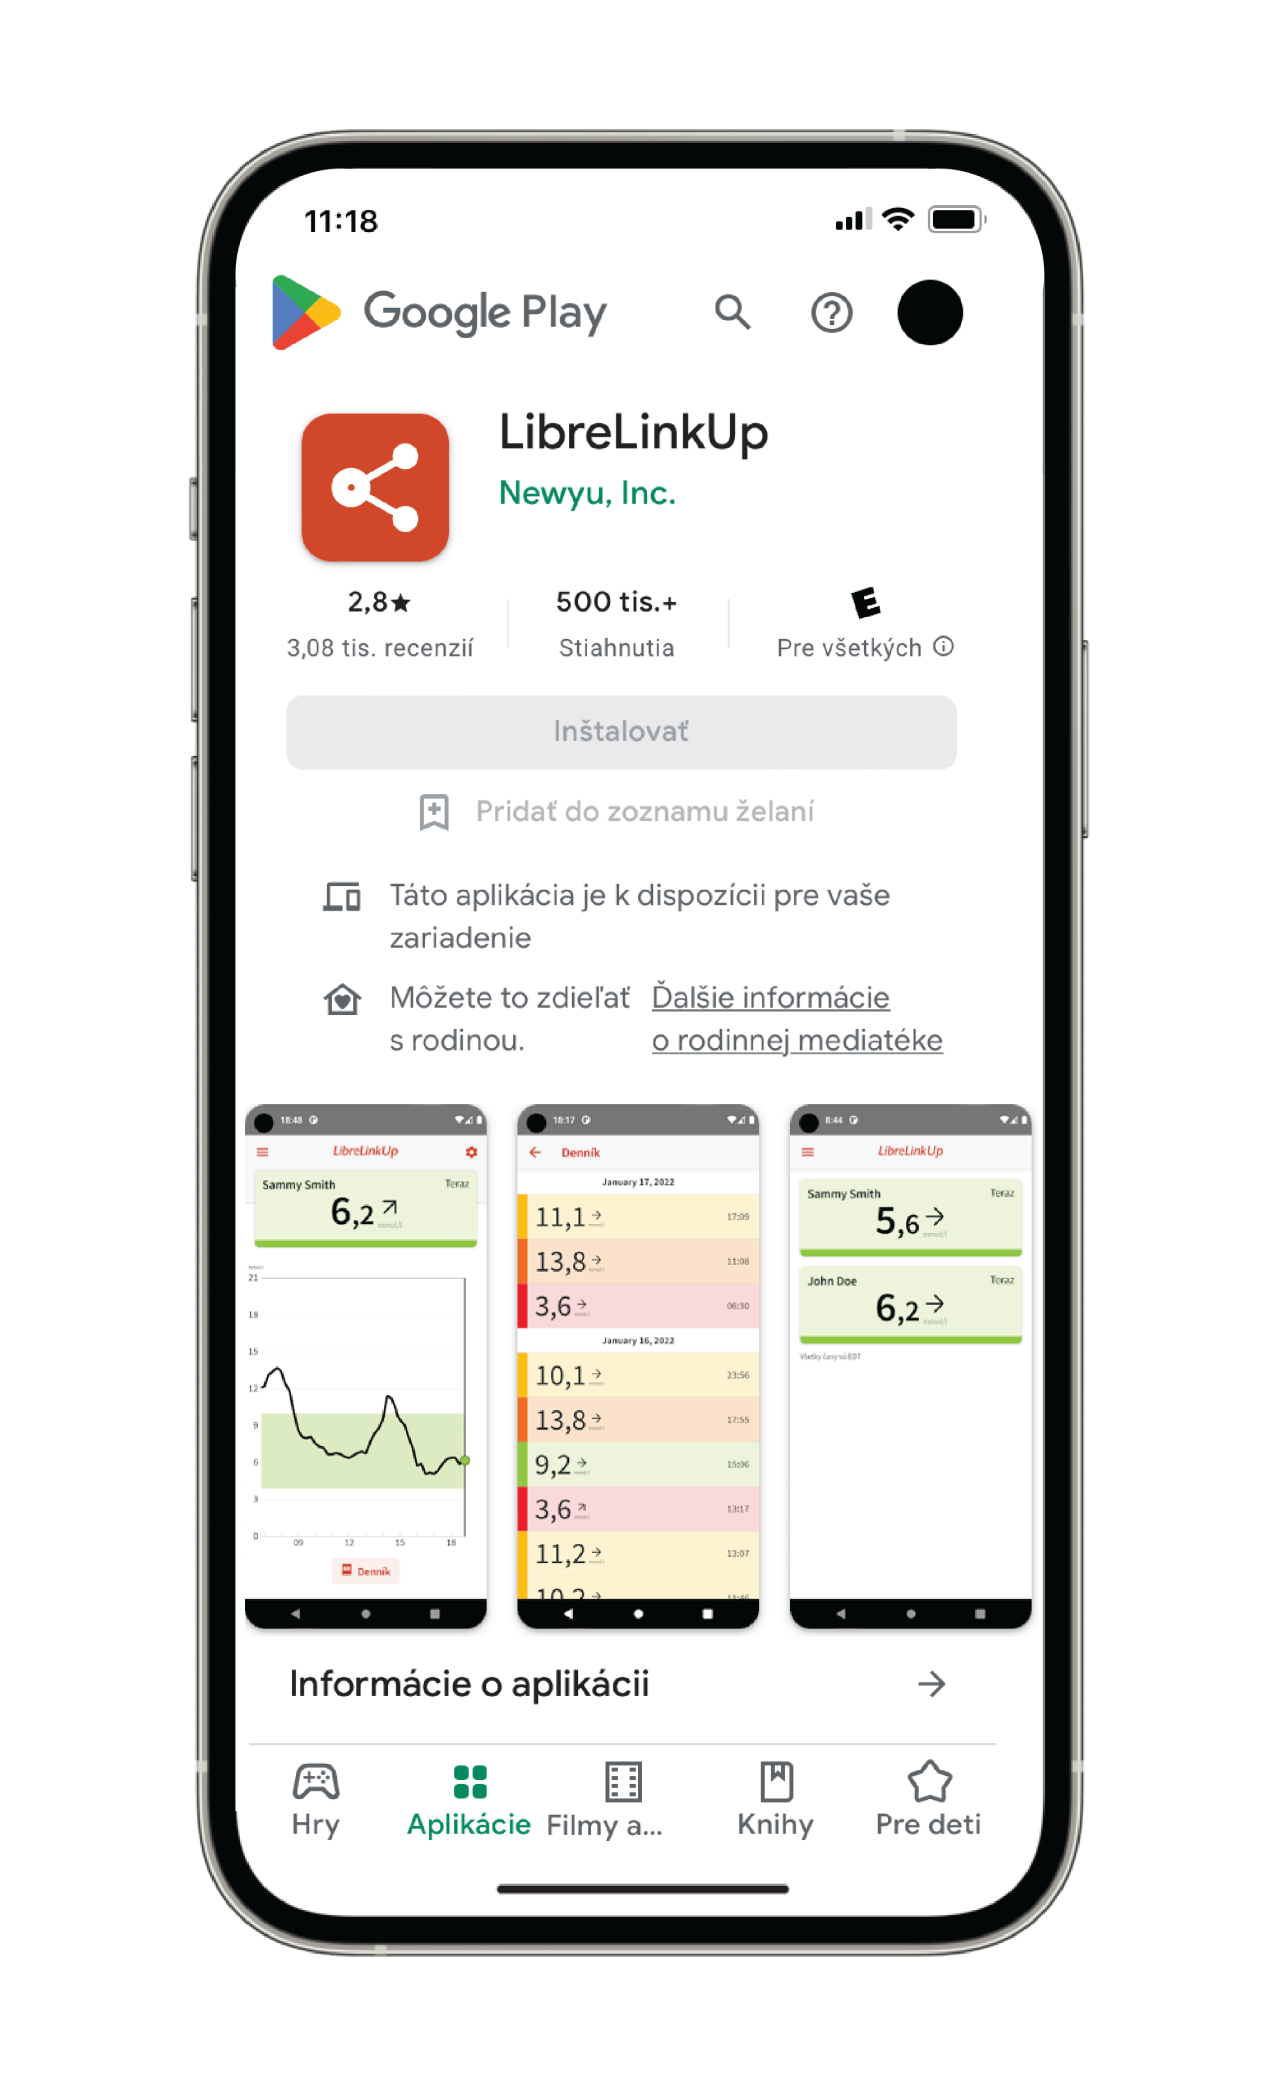 Obrázok stránky LibreLinkUp z Google Play